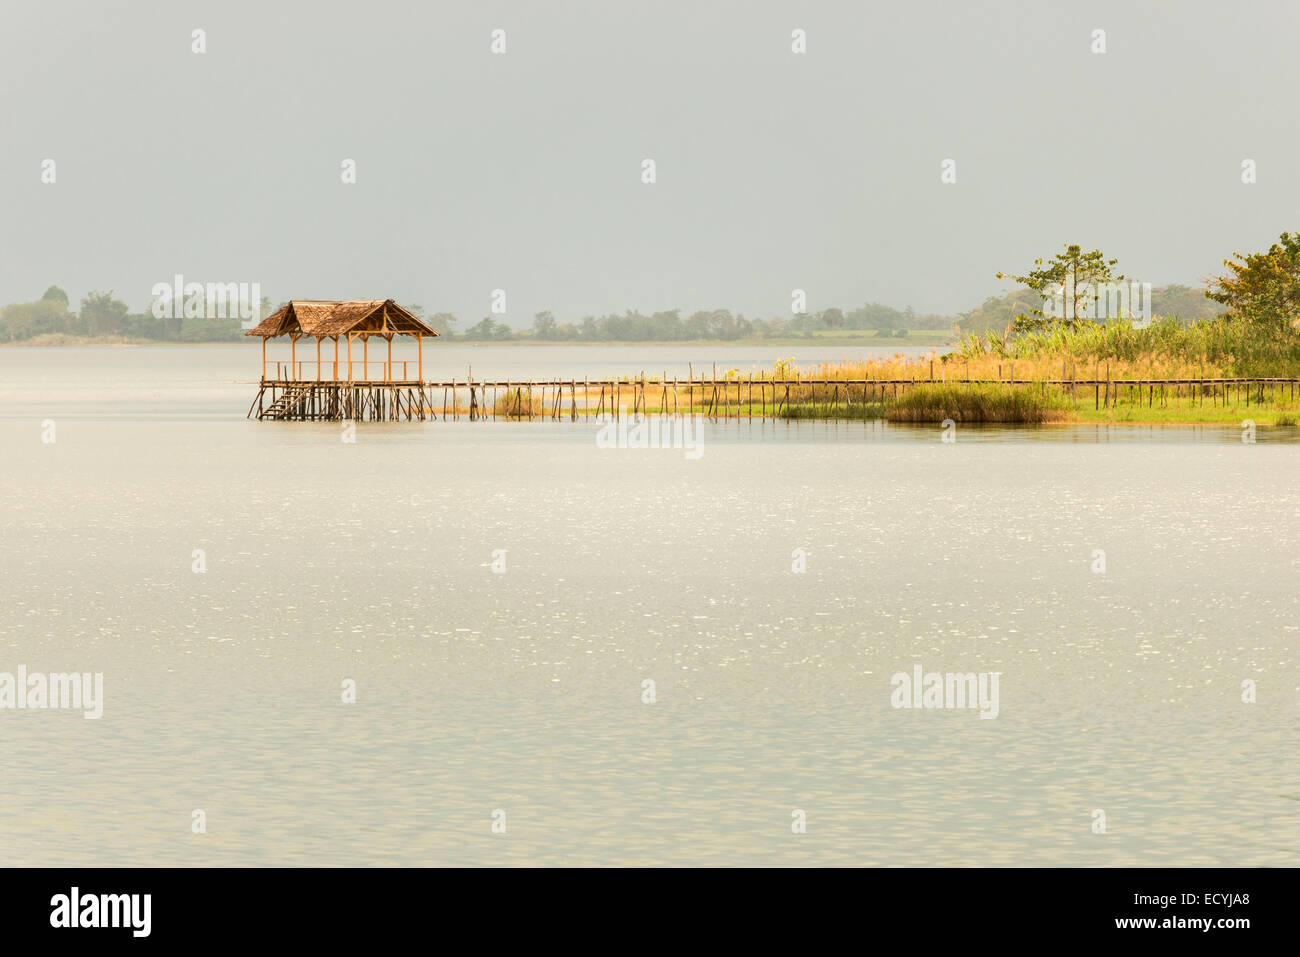 Pontile in legno e stilt hut sul Lago Poso nelle Sulawesi, Indonesia. Un basso contrasto, luce morbida, ottimale per gli sfondi. Foto Stock